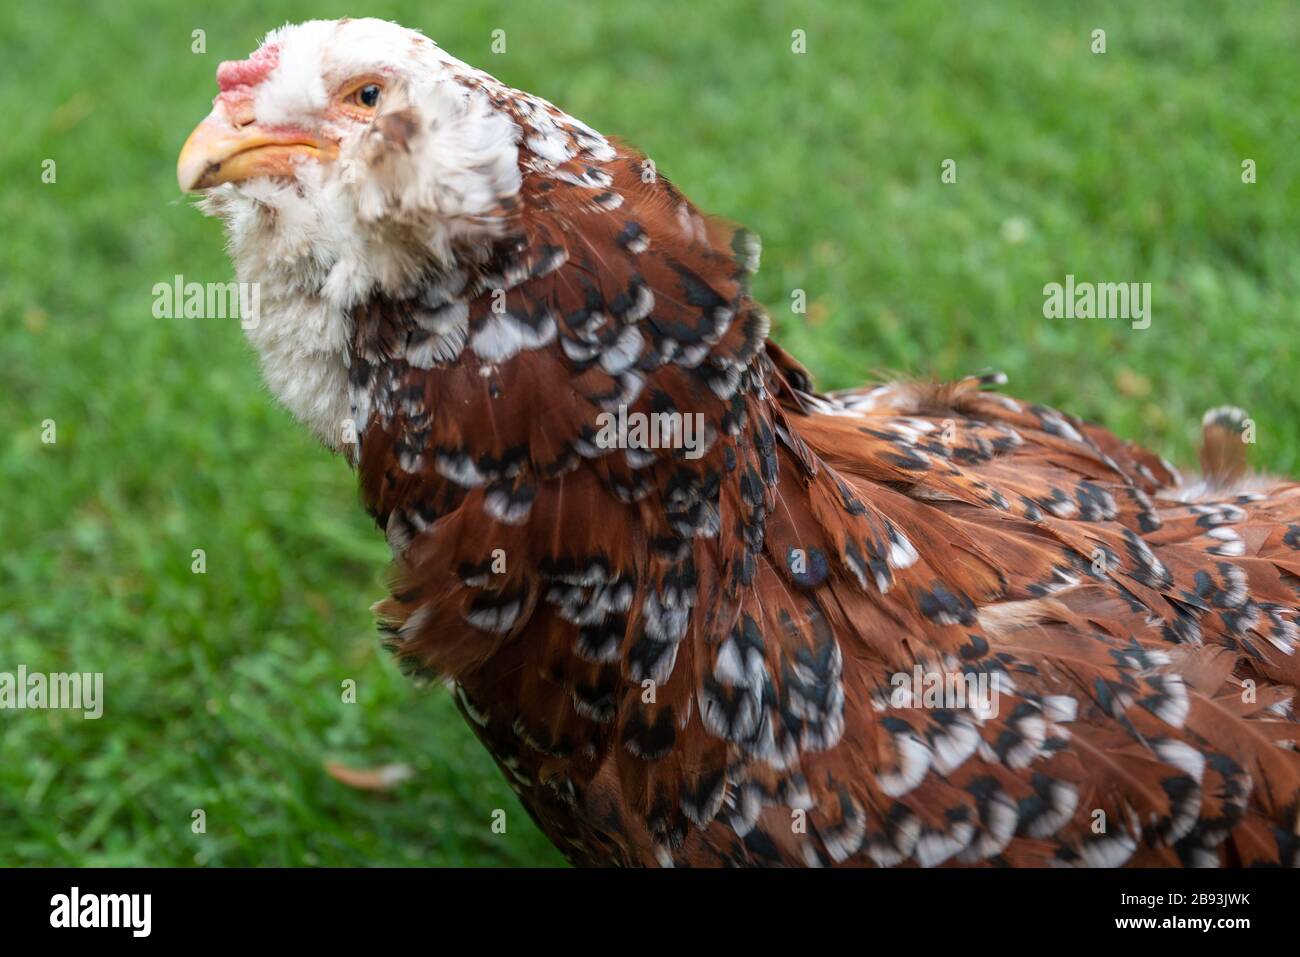 Gros plan de poulet Orloff brun russe contre l'herbe verte Banque D'Images